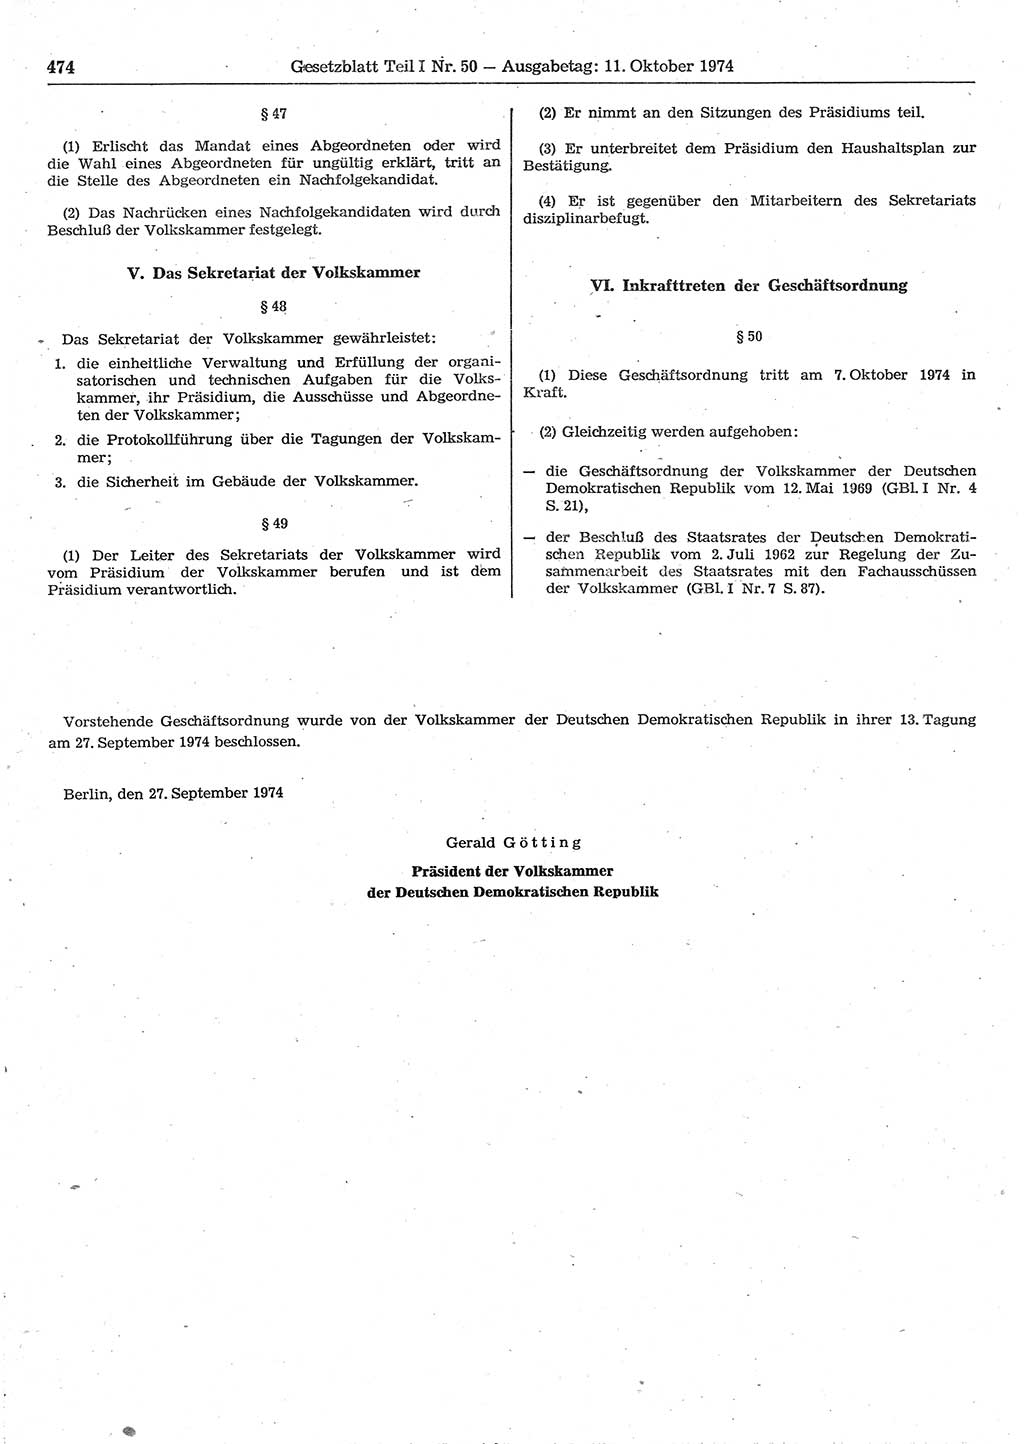 Gesetzblatt (GBl.) der Deutschen Demokratischen Republik (DDR) Teil Ⅰ 1974, Seite 474 (GBl. DDR Ⅰ 1974, S. 474)